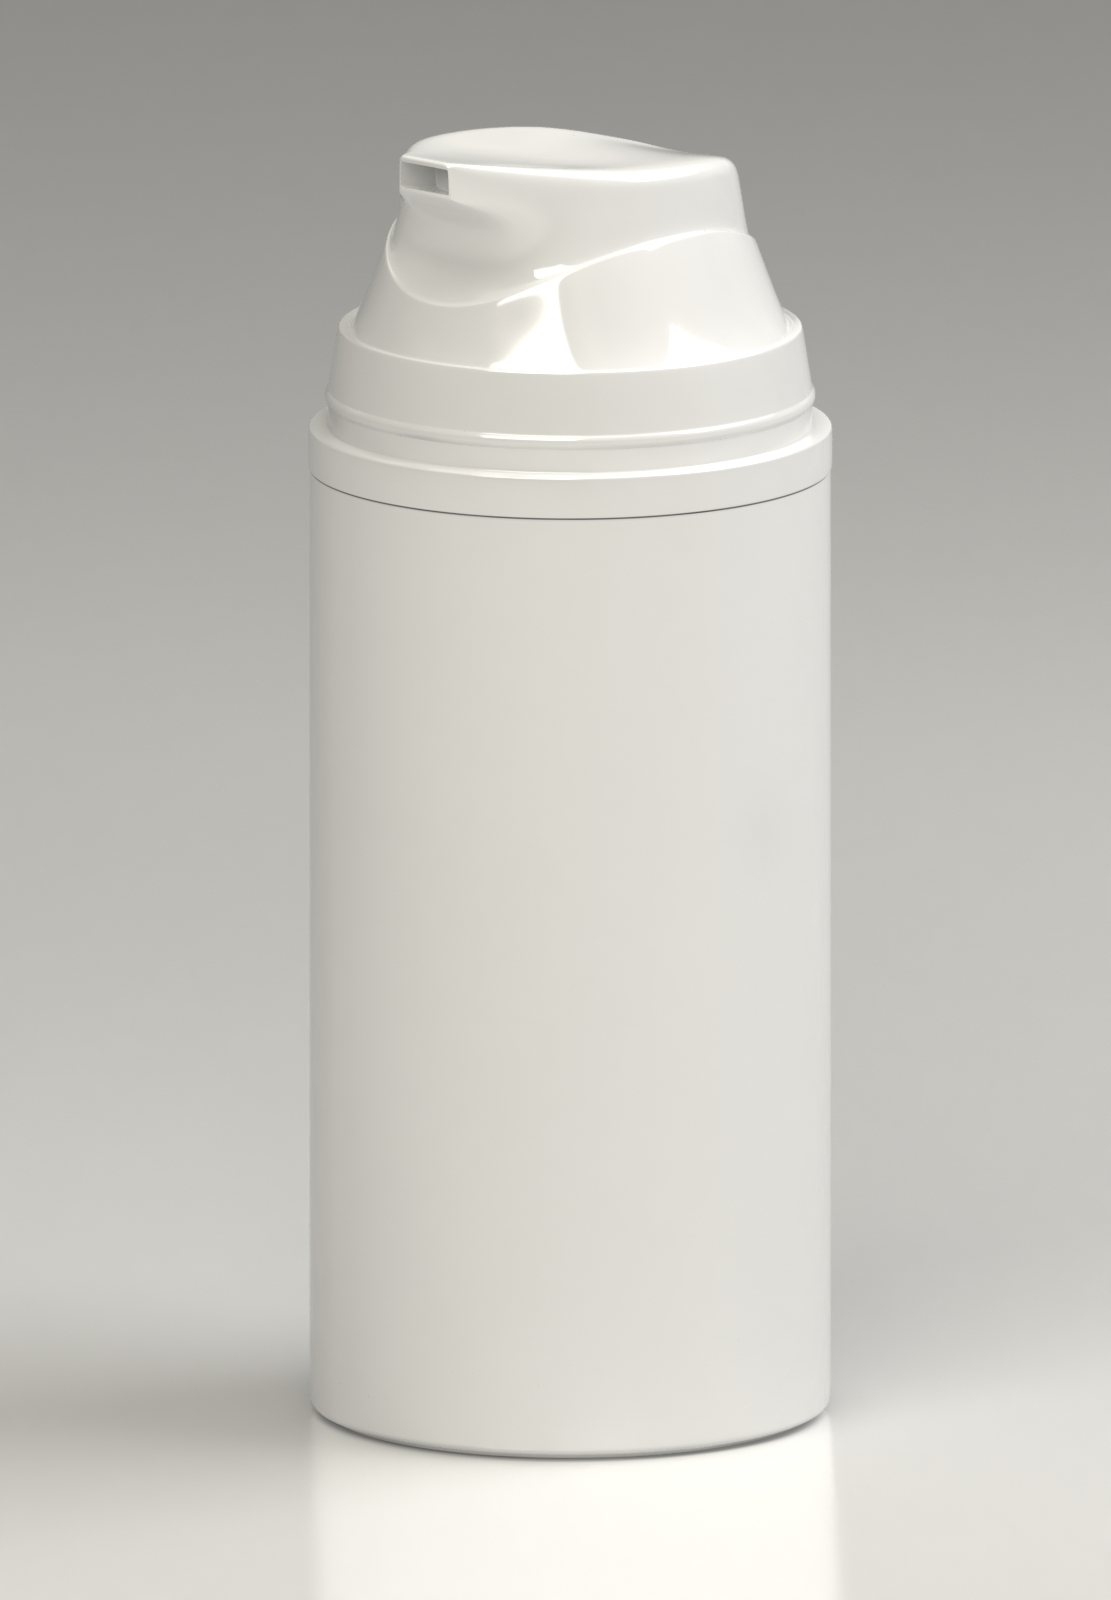 Render 3ds MAX Packaging airless plastic White studio modeling model